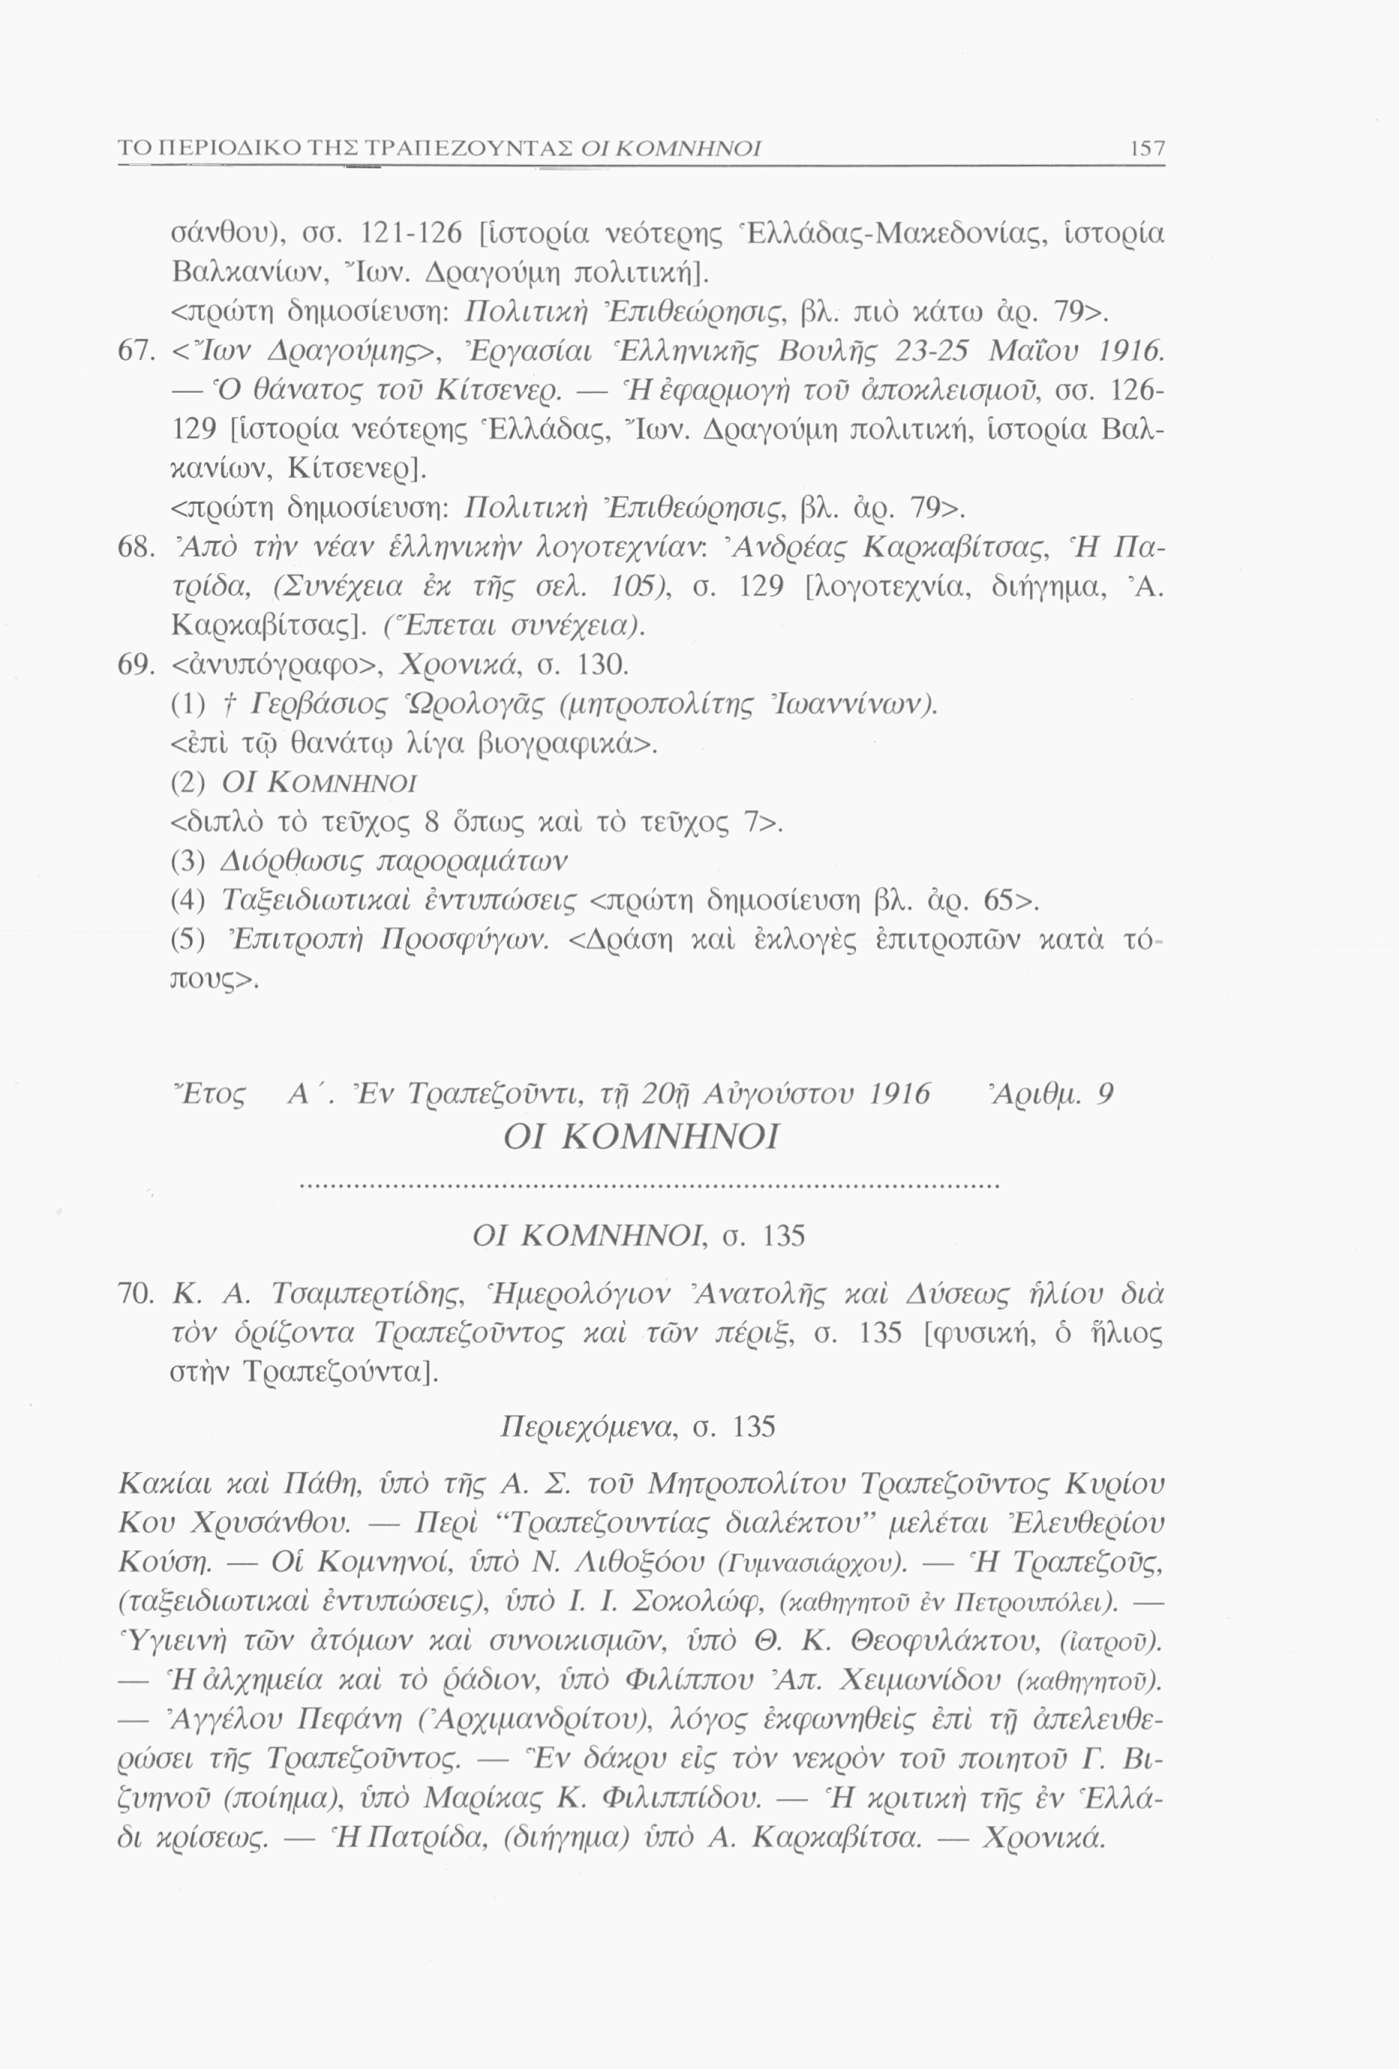 ΤΟ ΠΕΡΙΟΔΙΚΟ ΤΗΣ ΤΡΑΠΕΖΟΥΝΤΑΣ 157 σάνθου), σσ. 121-126 [Ιστορία νεότερης Έλλάδας-Μακεδονίας, Ιστορία Βαλκανίων, νιων. Δραγούμη πολιτική]. <πρώτη δημοσίευση: Πολιτική Έπιθεώρησις, βλ. πιο κάτω άρ. 79>.